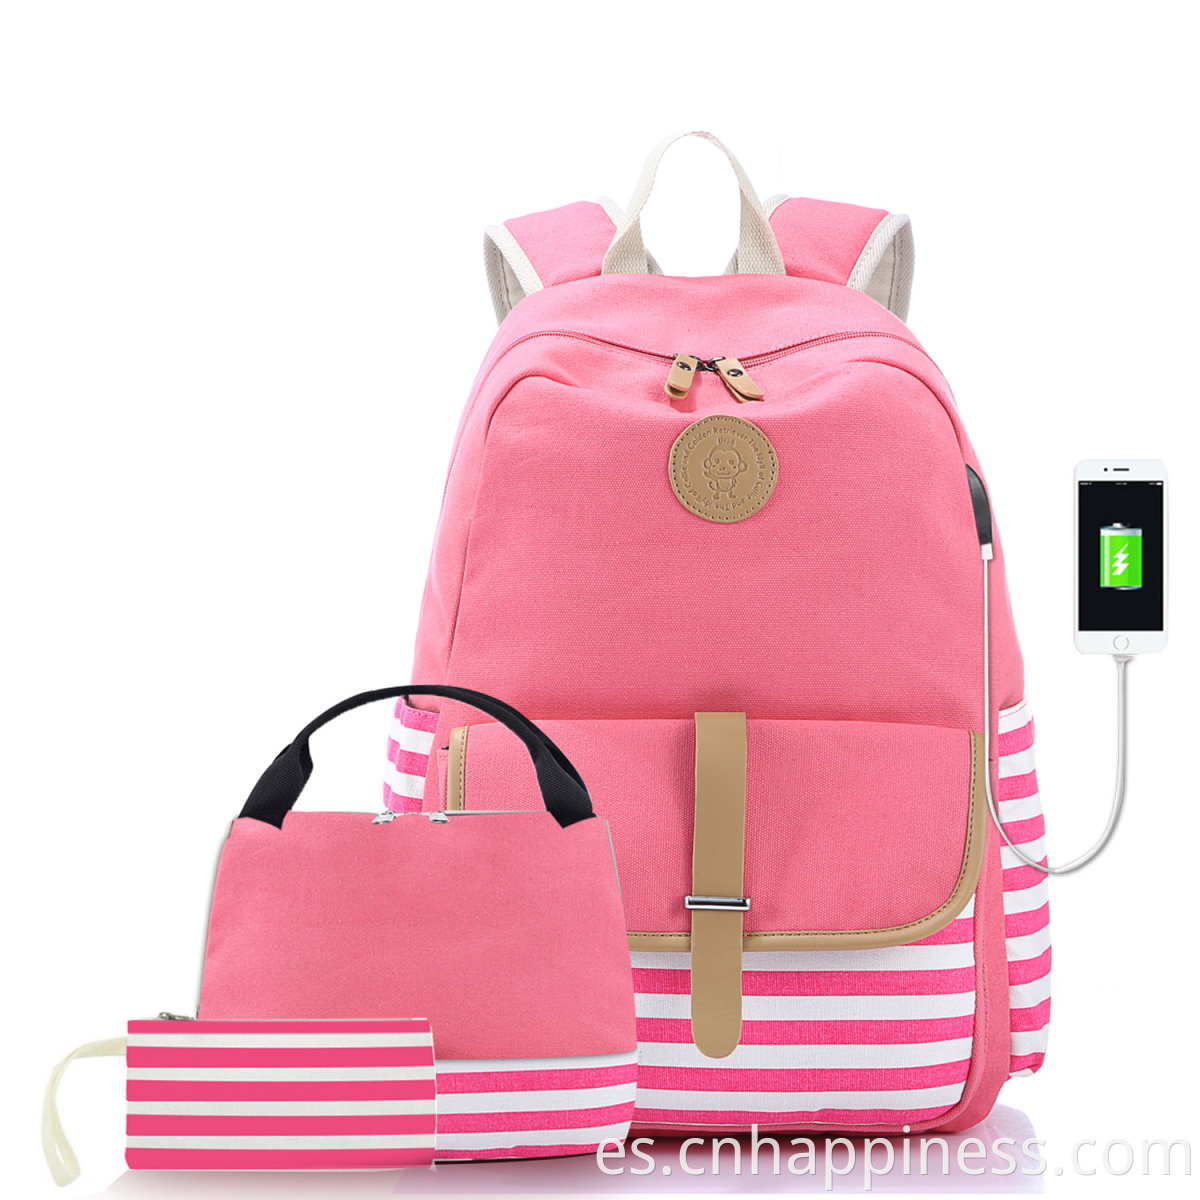 Amazon Hot Sale plegable Usb USB Bag Bag de la escuela Navel Blue Blue Cotton Canvas Set de mochila Set